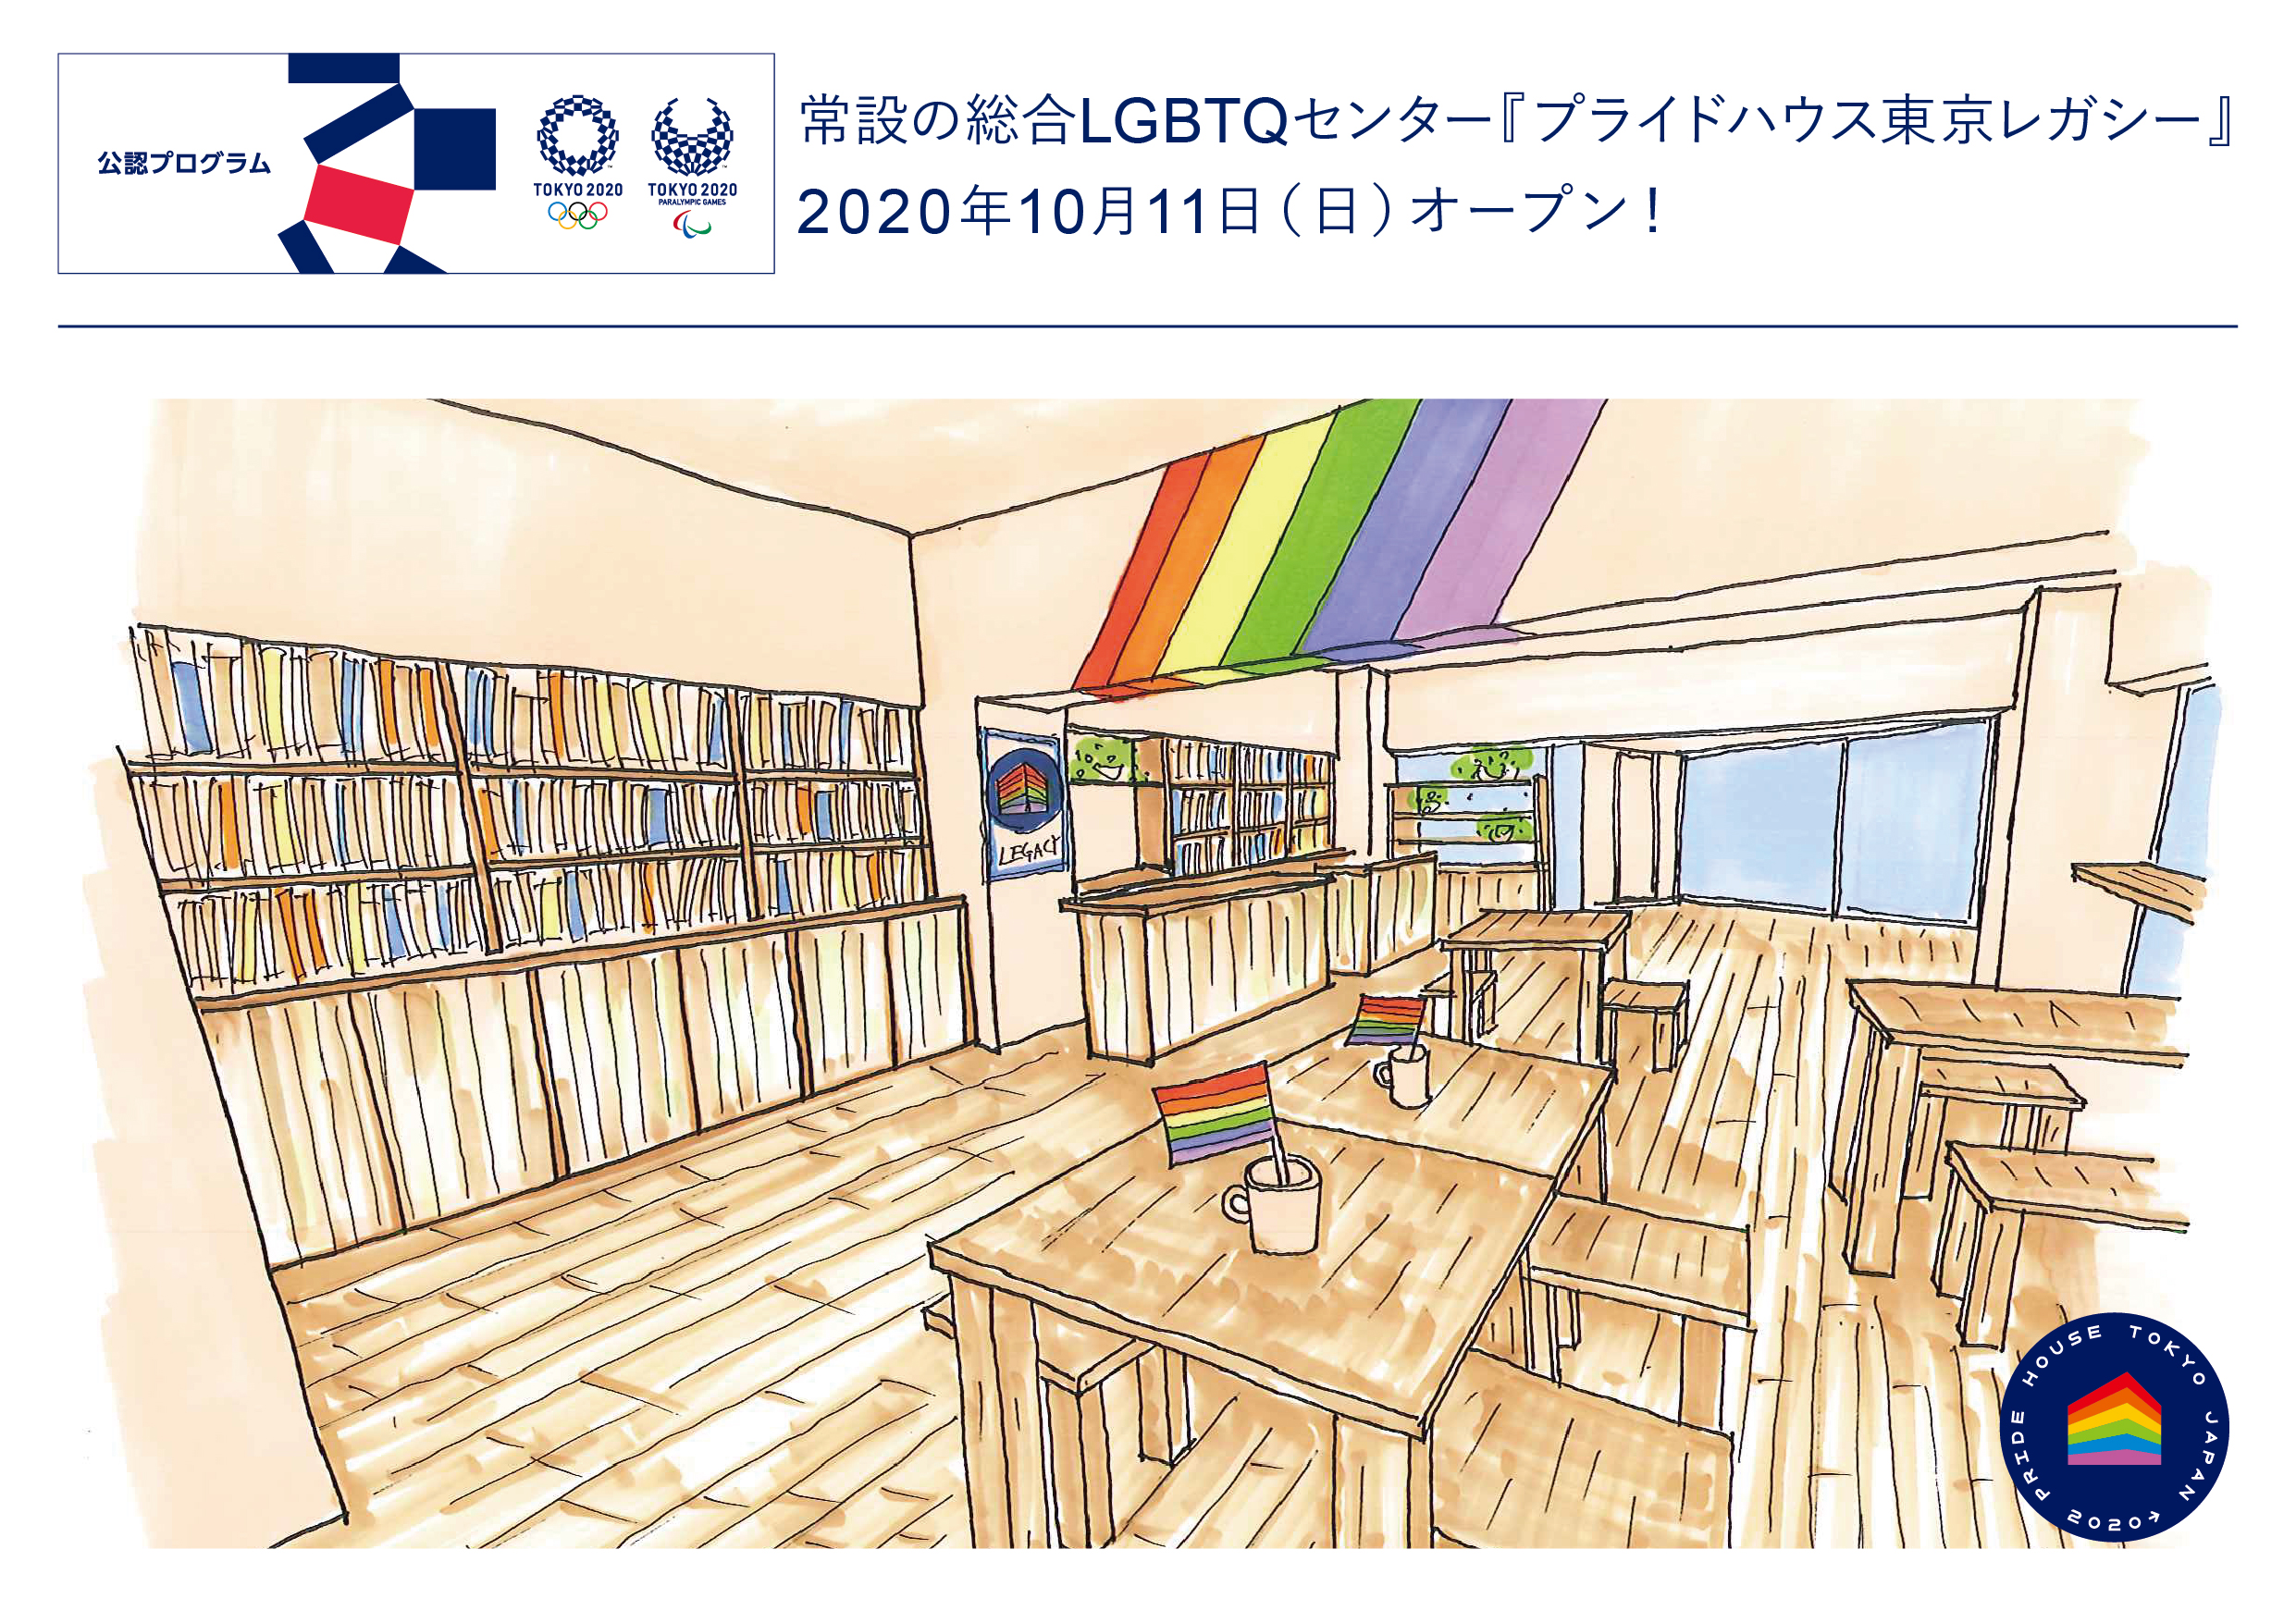 常設の総合lgbtqセンター プライドハウス東京レガシー が 10月11日にオープン 東京 公認プログラム として情報発信 組織委員会の公認となるのは 世界のプライドハウス史上で初めての試み Npo法人グッド エイジング エールズのプレスリリース